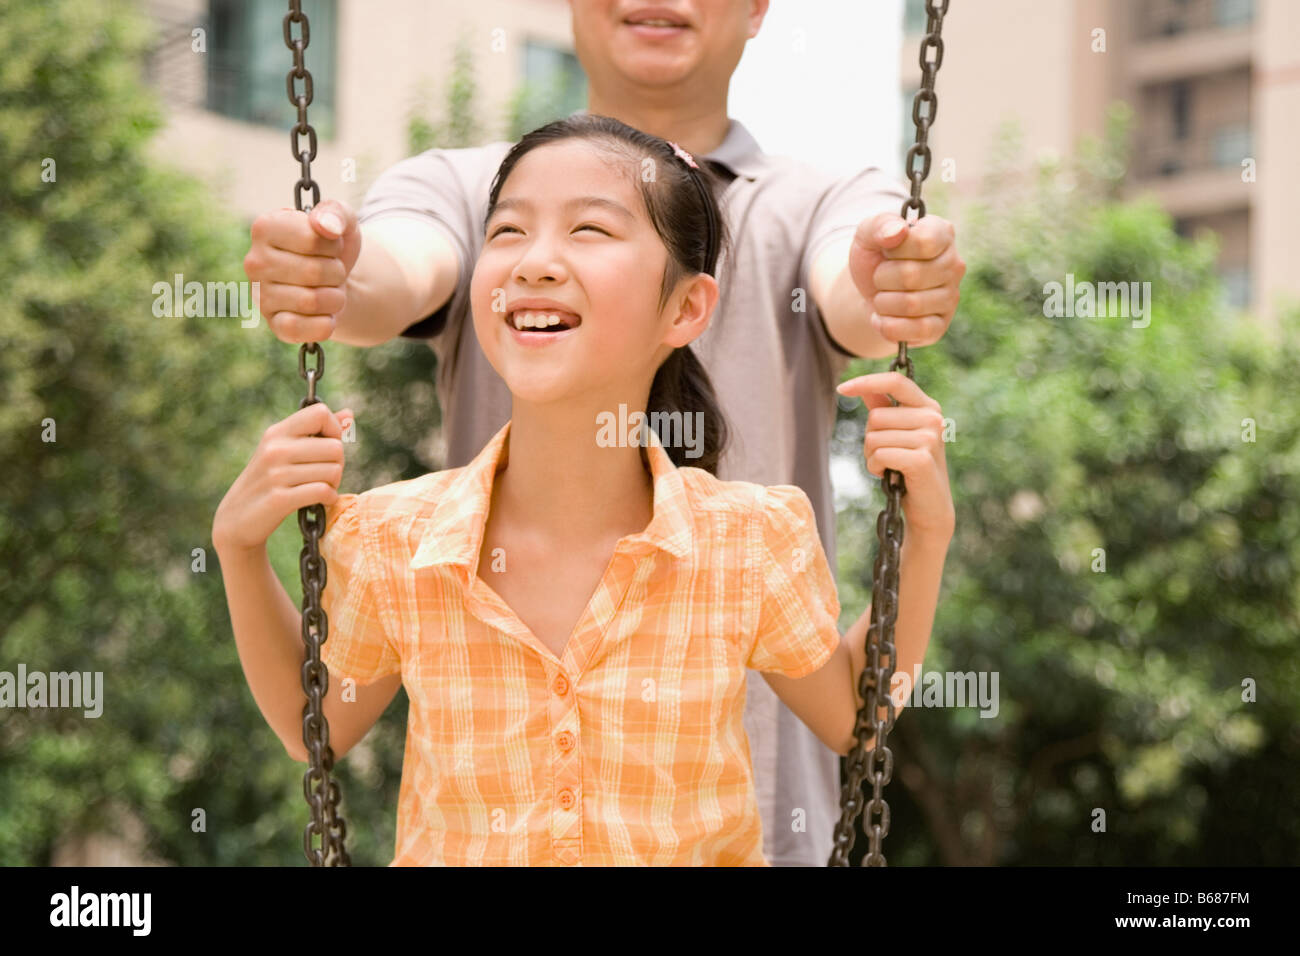 Mädchen auf einer Schaukel mit ihrem Vater hinter ihr stand lächelnd Stockfoto